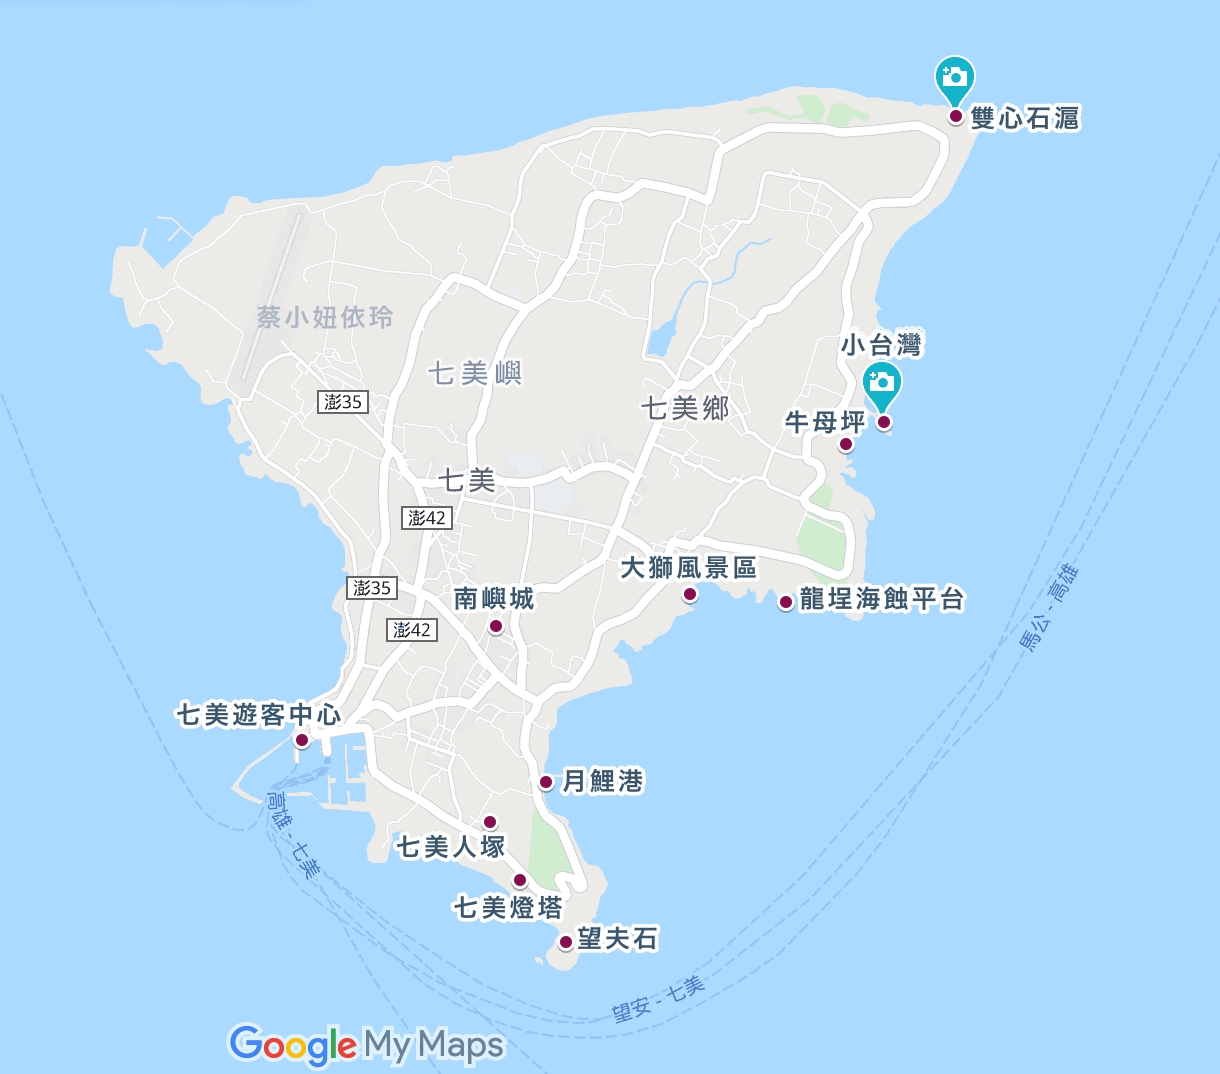 澎湖七美跳島一日遊 七美景點地圖、船票交通、拍照攻略